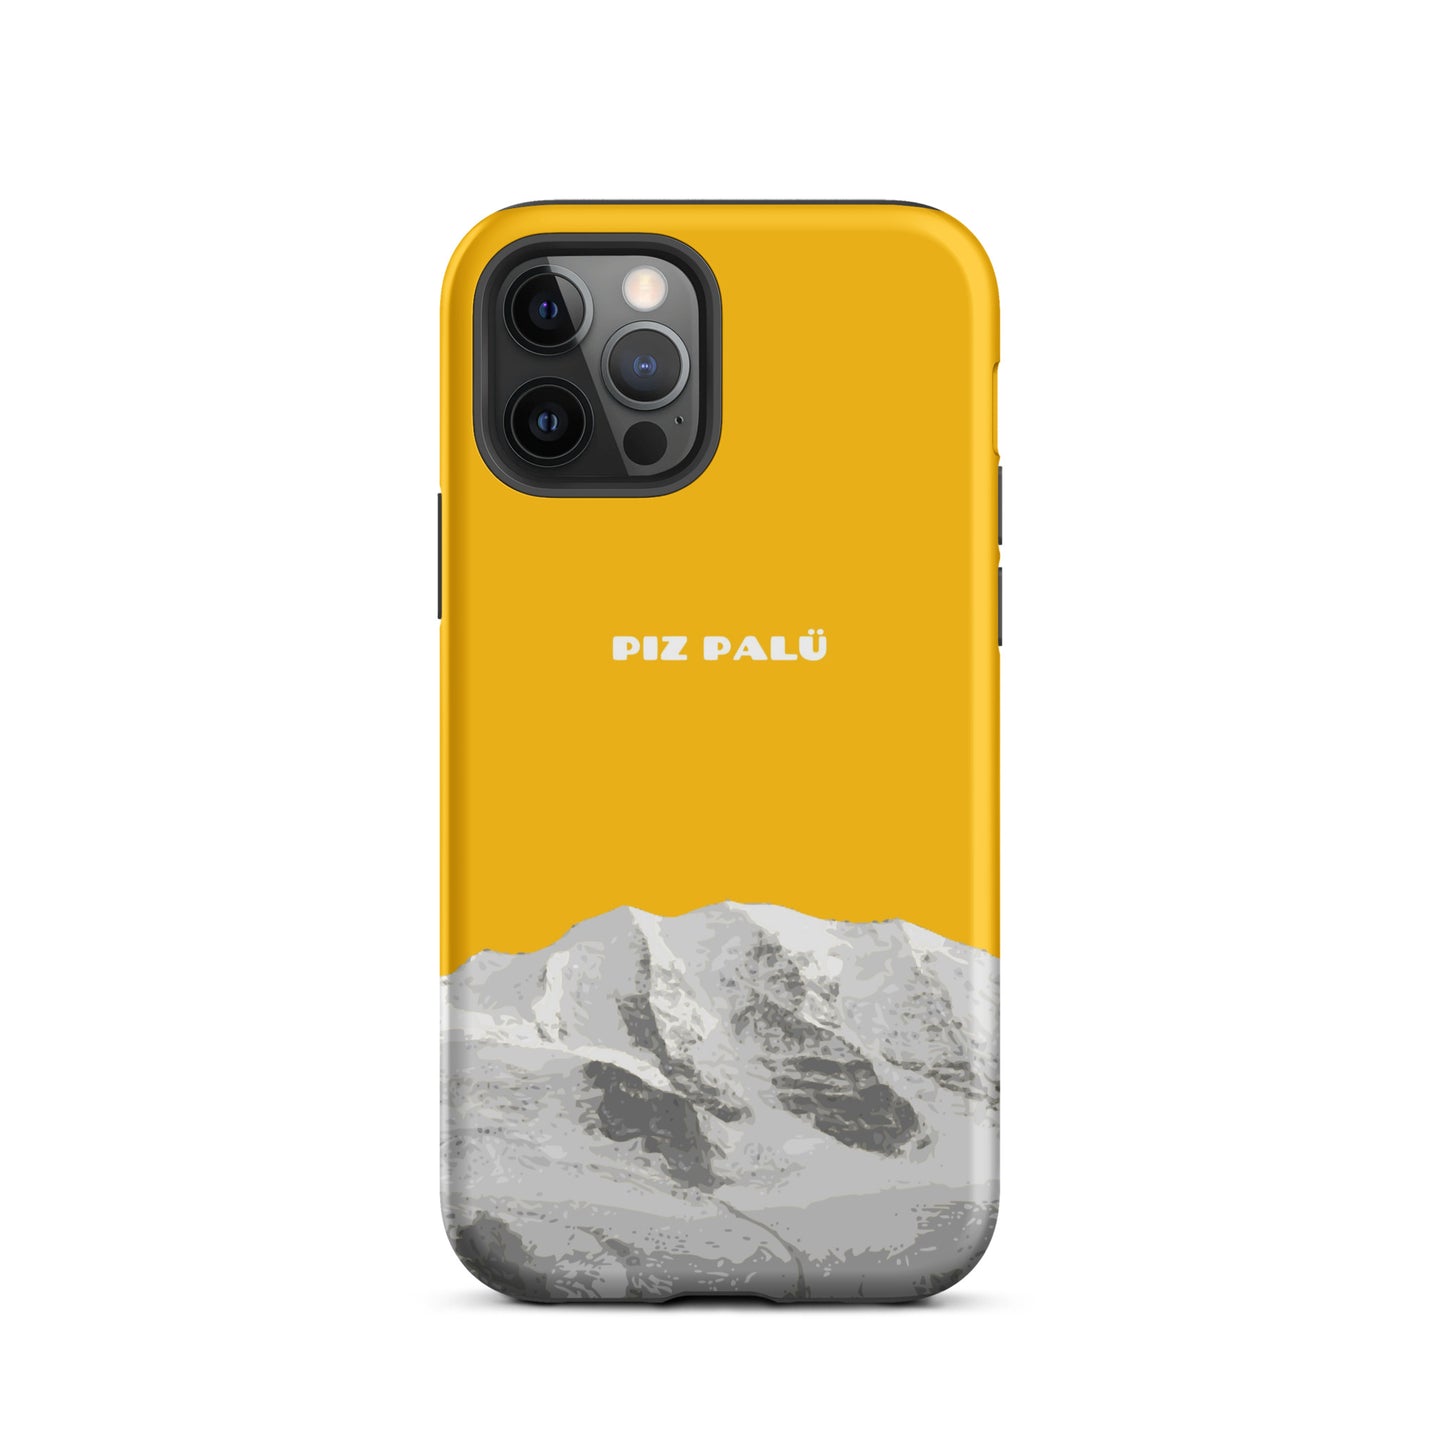 Hülle für das iPhone 12 Pro von Apple in der Farbe Goldgelb, dass den Piz Palü in Graubünden zeigt.